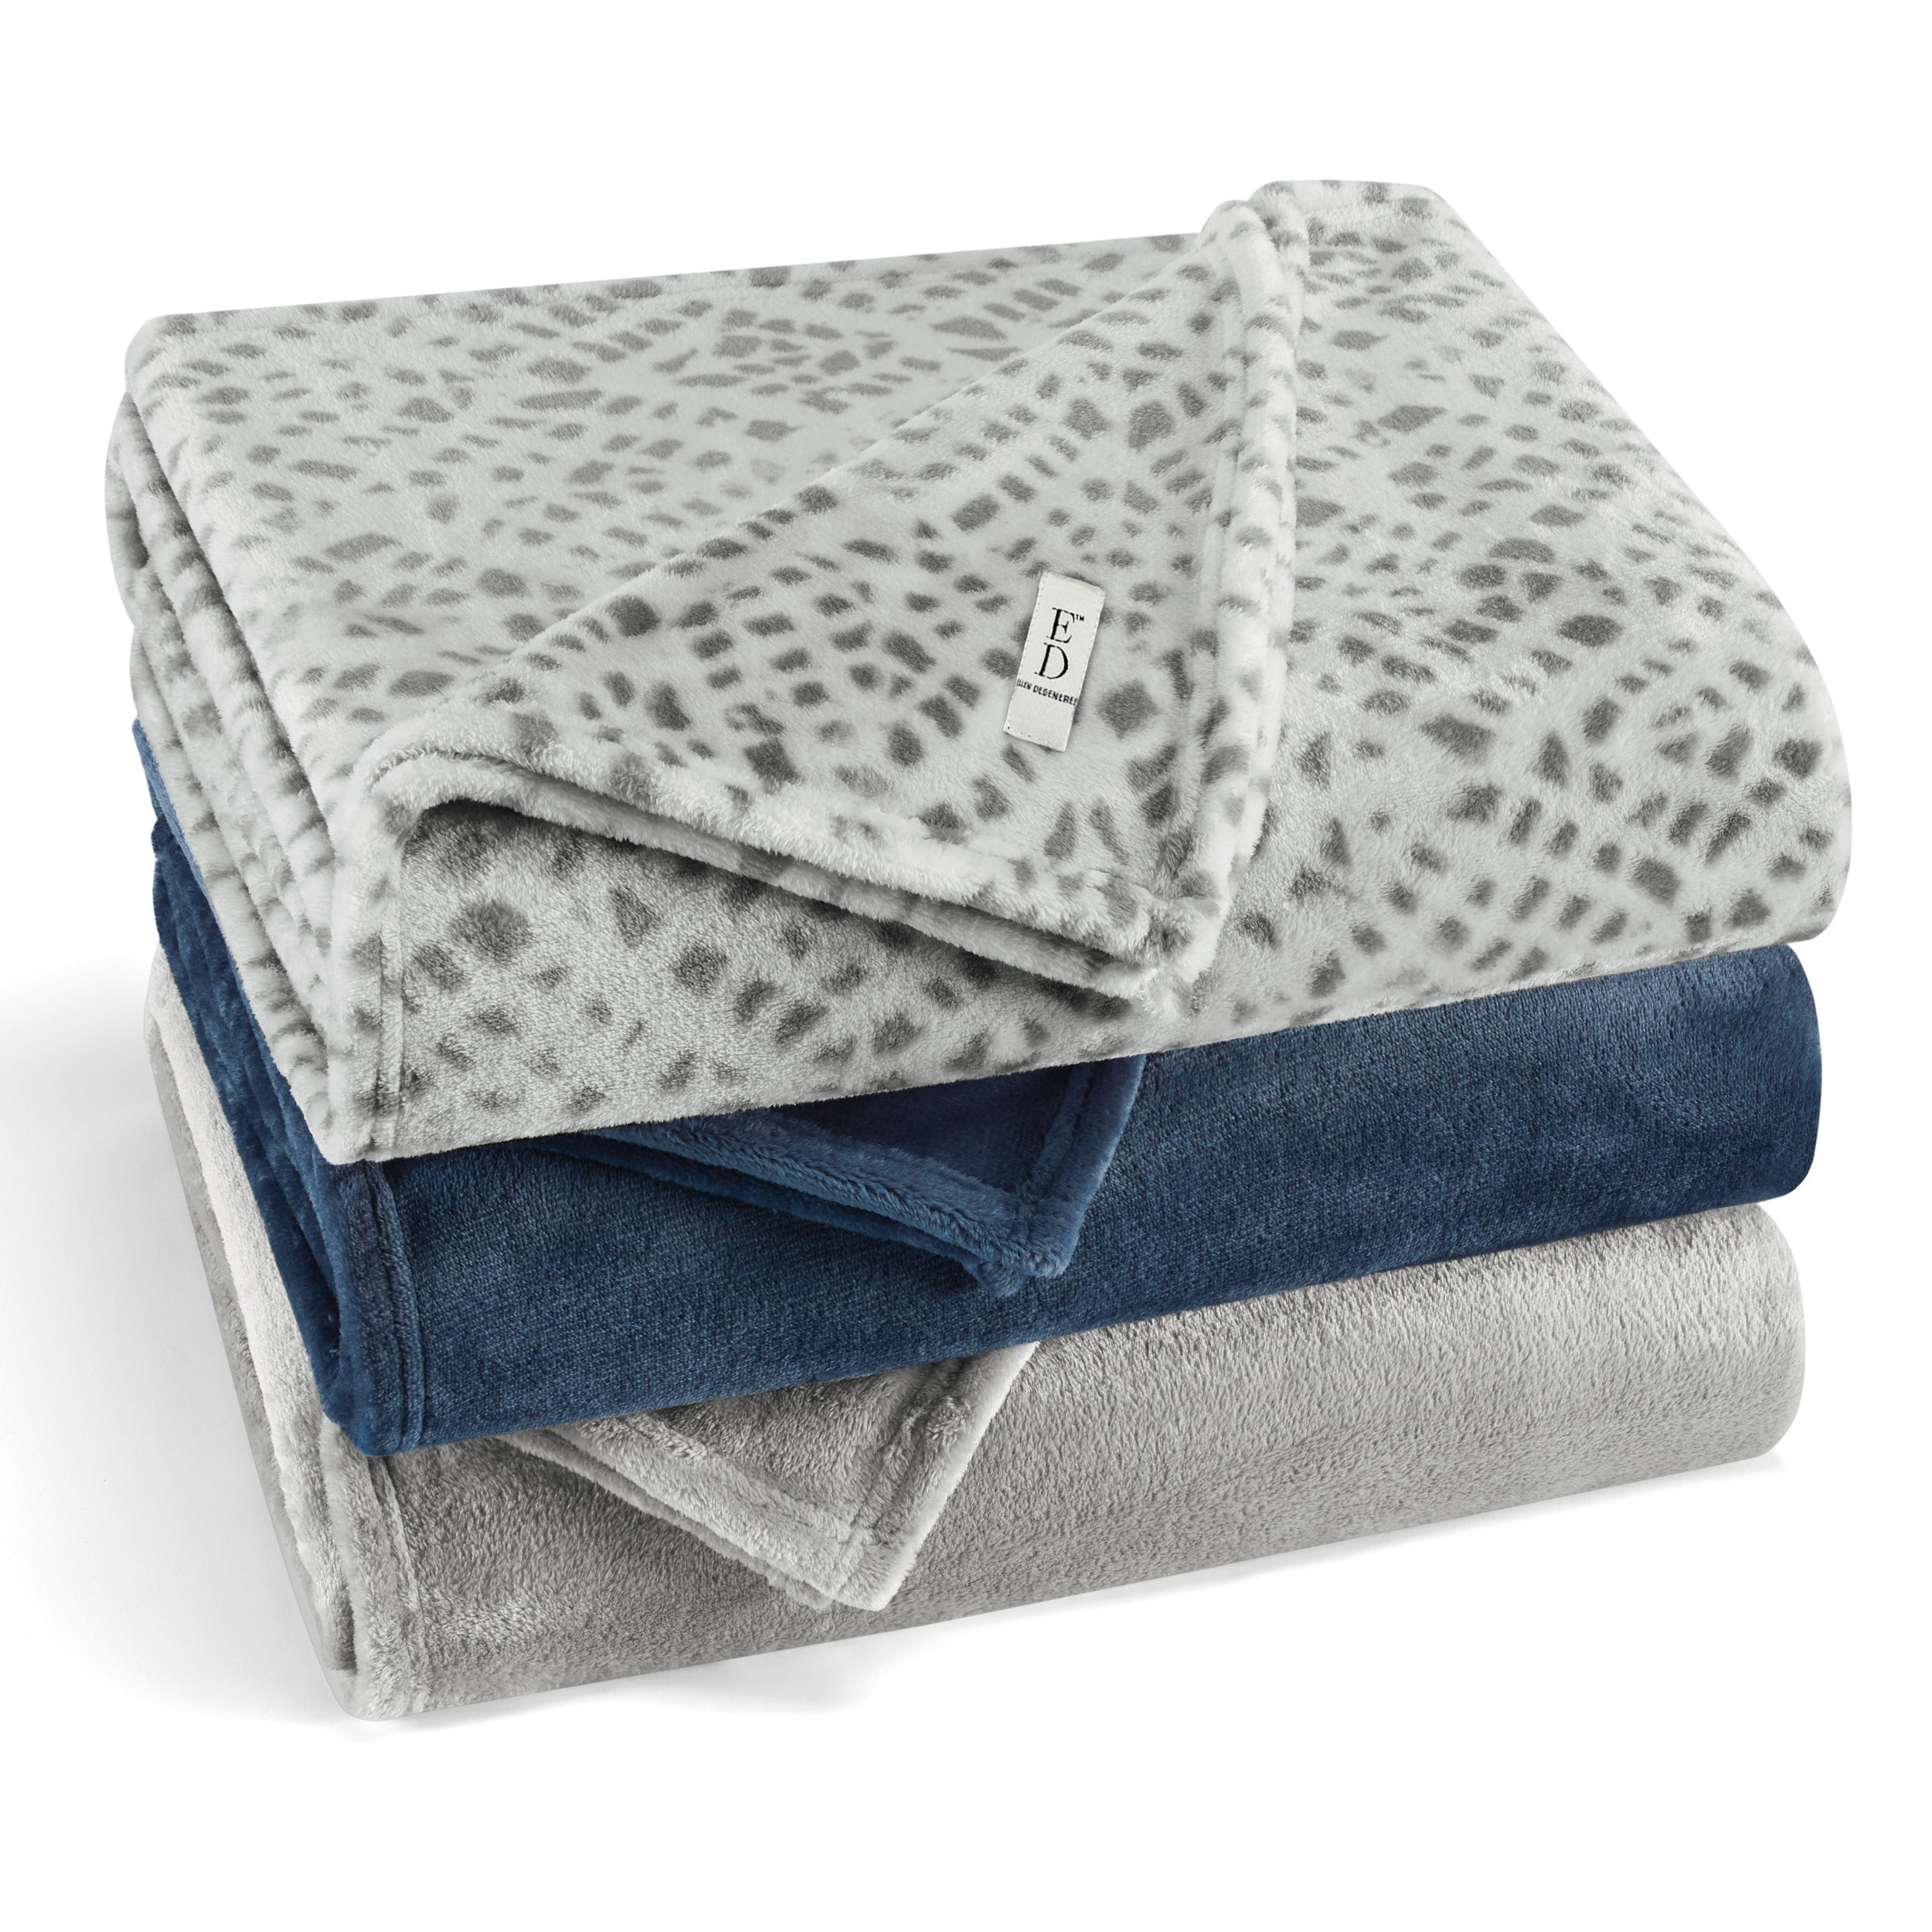 Ed Ellen Degeneres Ultra Plush Premium Cozy Fleece Blanket Overstock 31287973